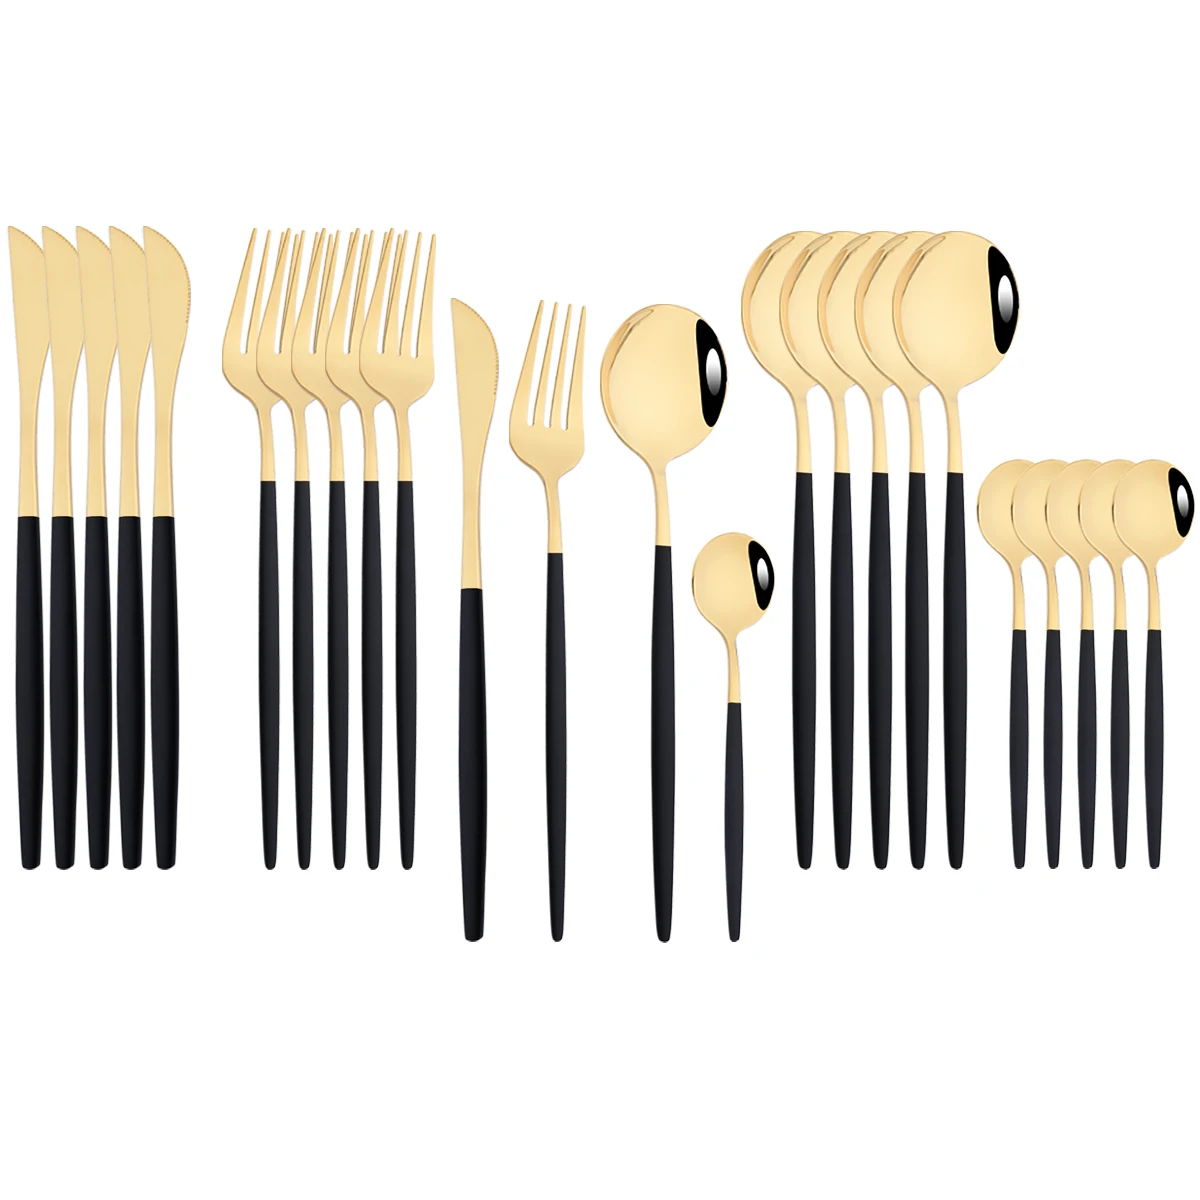 

Набор столовой посуды из нержавеющей стали, комплект из 24 приборов черного и золотого цвета, ножи, вилка, кофейные ложки, столовые приборы